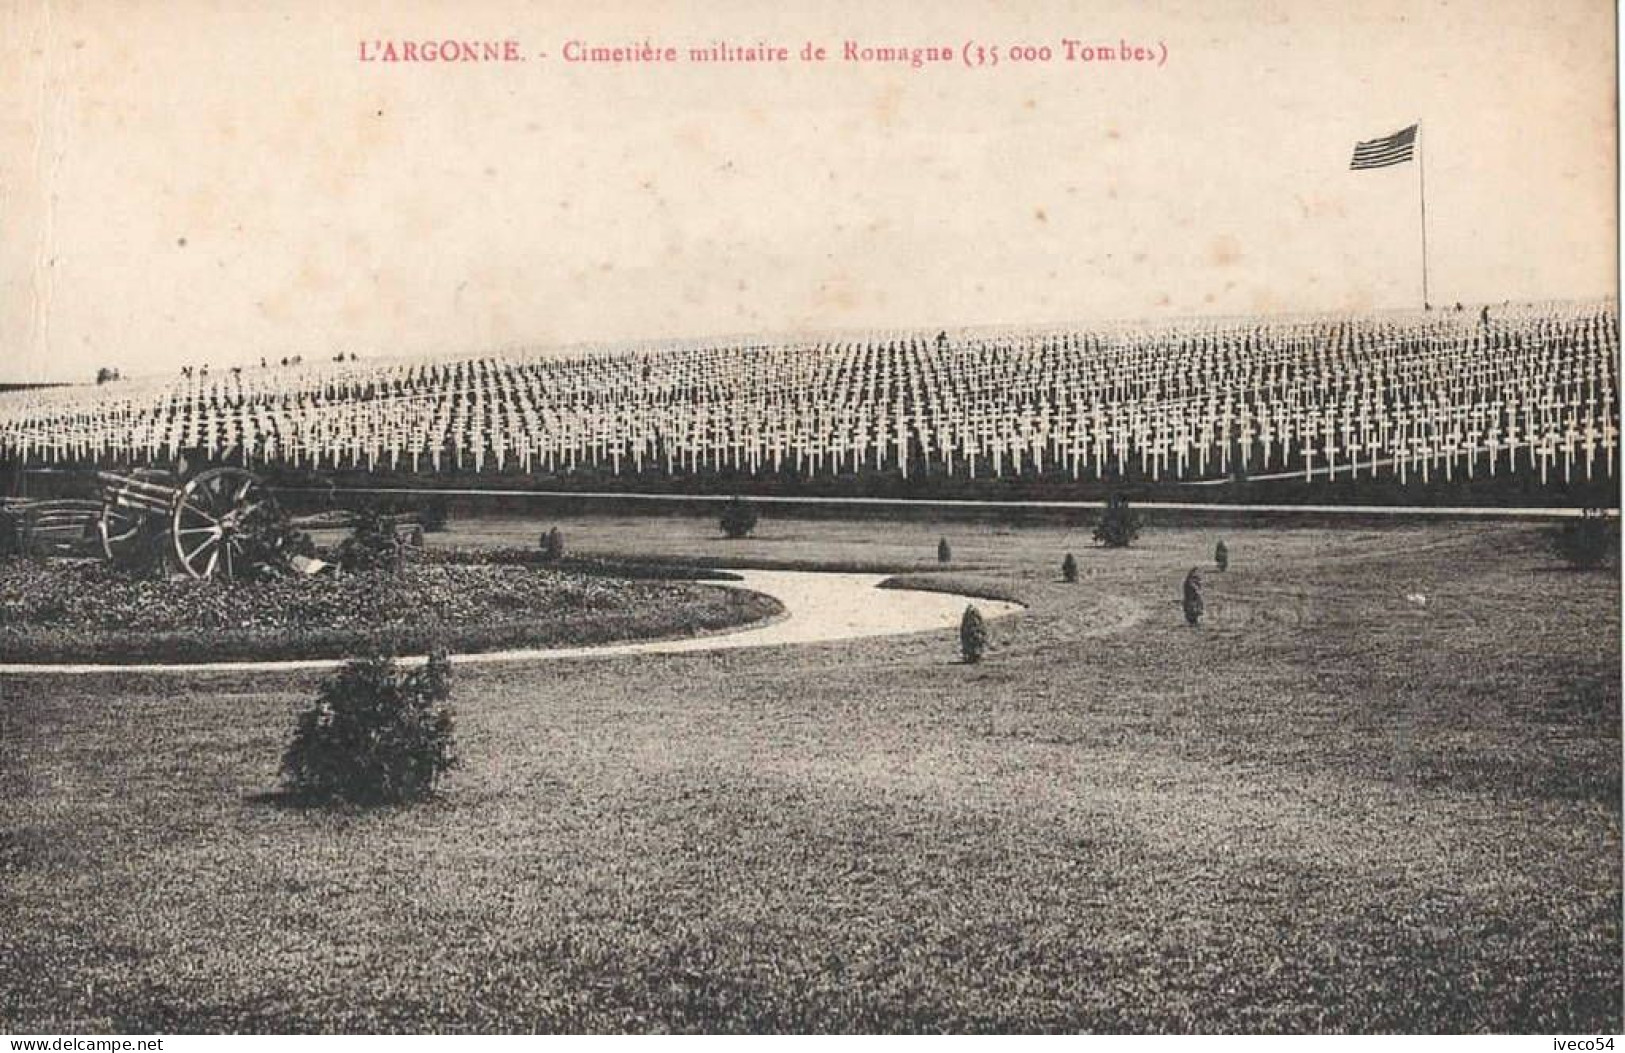 Meuse  / Argonne  Cimetière Militaire Américain     Romagne S/s Montfaucon   ( 35000  Tombes ) - Cimetières Militaires